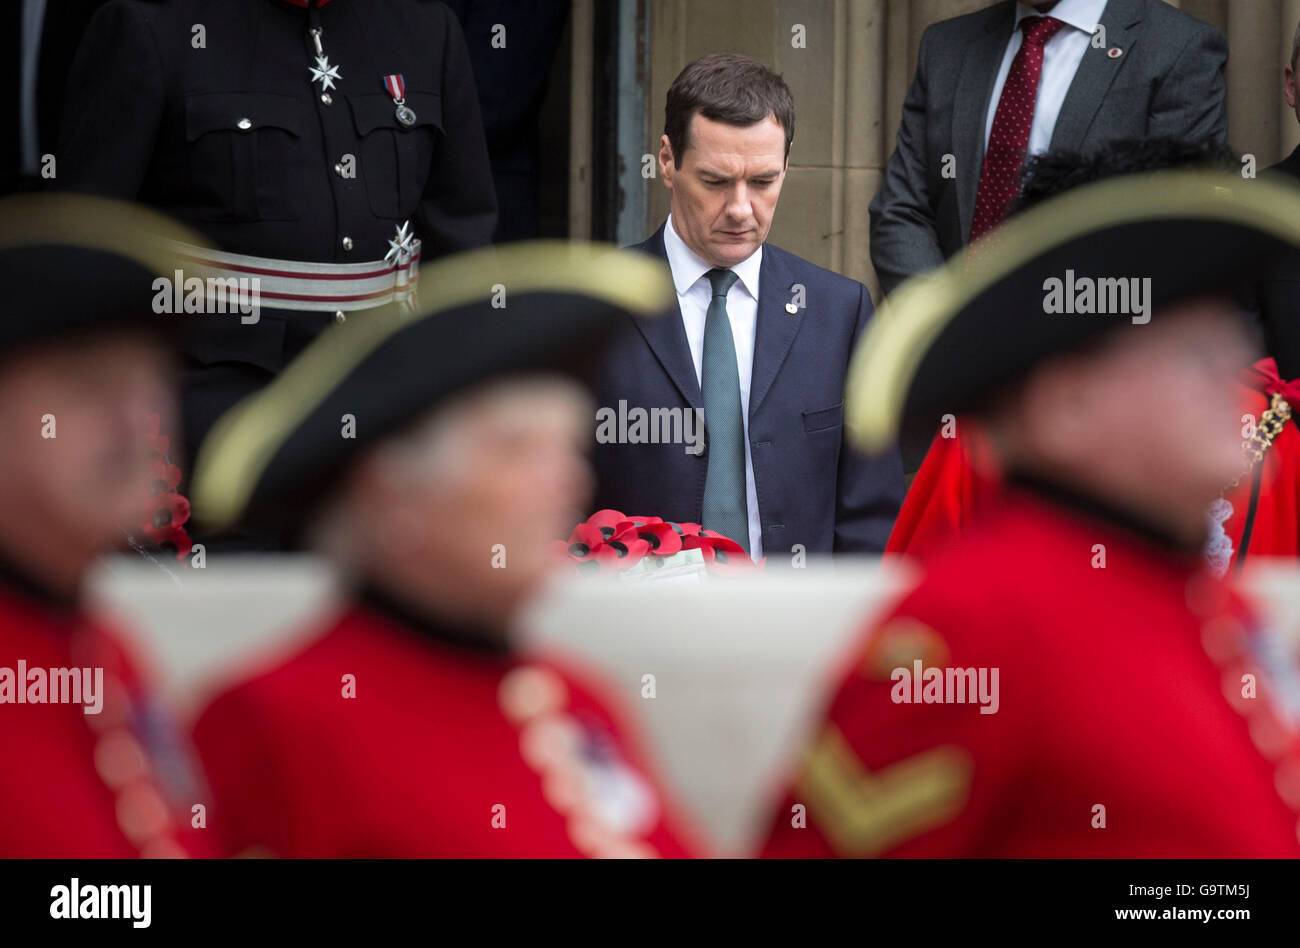 Le Chancelier George Osborne s'apprête à jeter une mine au cénotaphe de St Peter's Square, Manchester, où une cérémonie est organisée pour marquer le 100e anniversaire du début de la bataille de la Somme. Banque D'Images